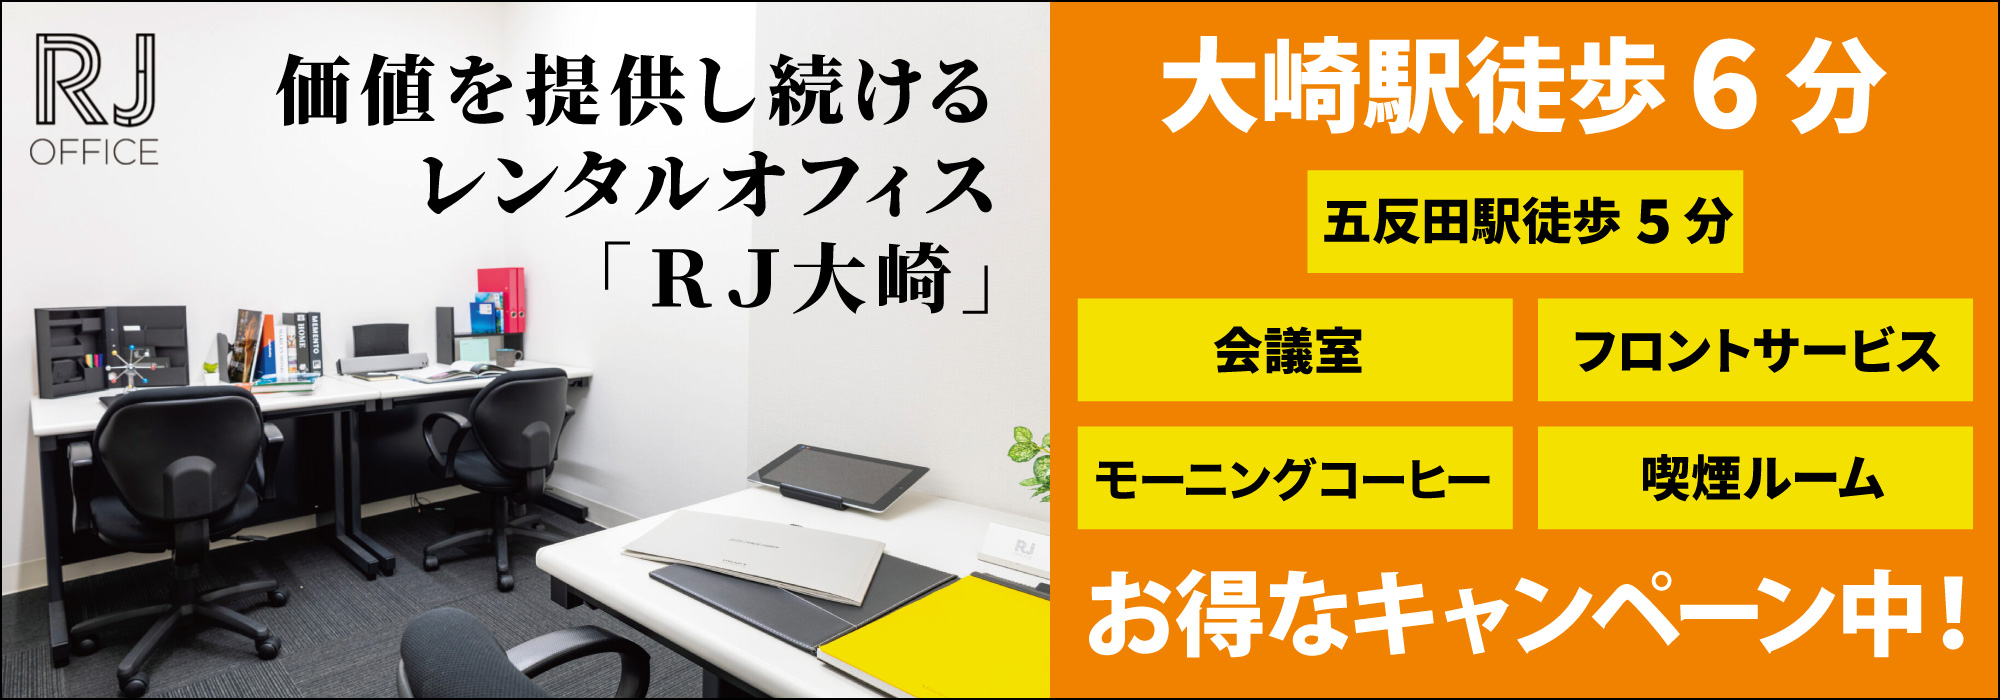 大崎のレンタルオフィス「RJ大崎」大崎駅徒歩６分、価値を提供し続けるレンタルオフィス